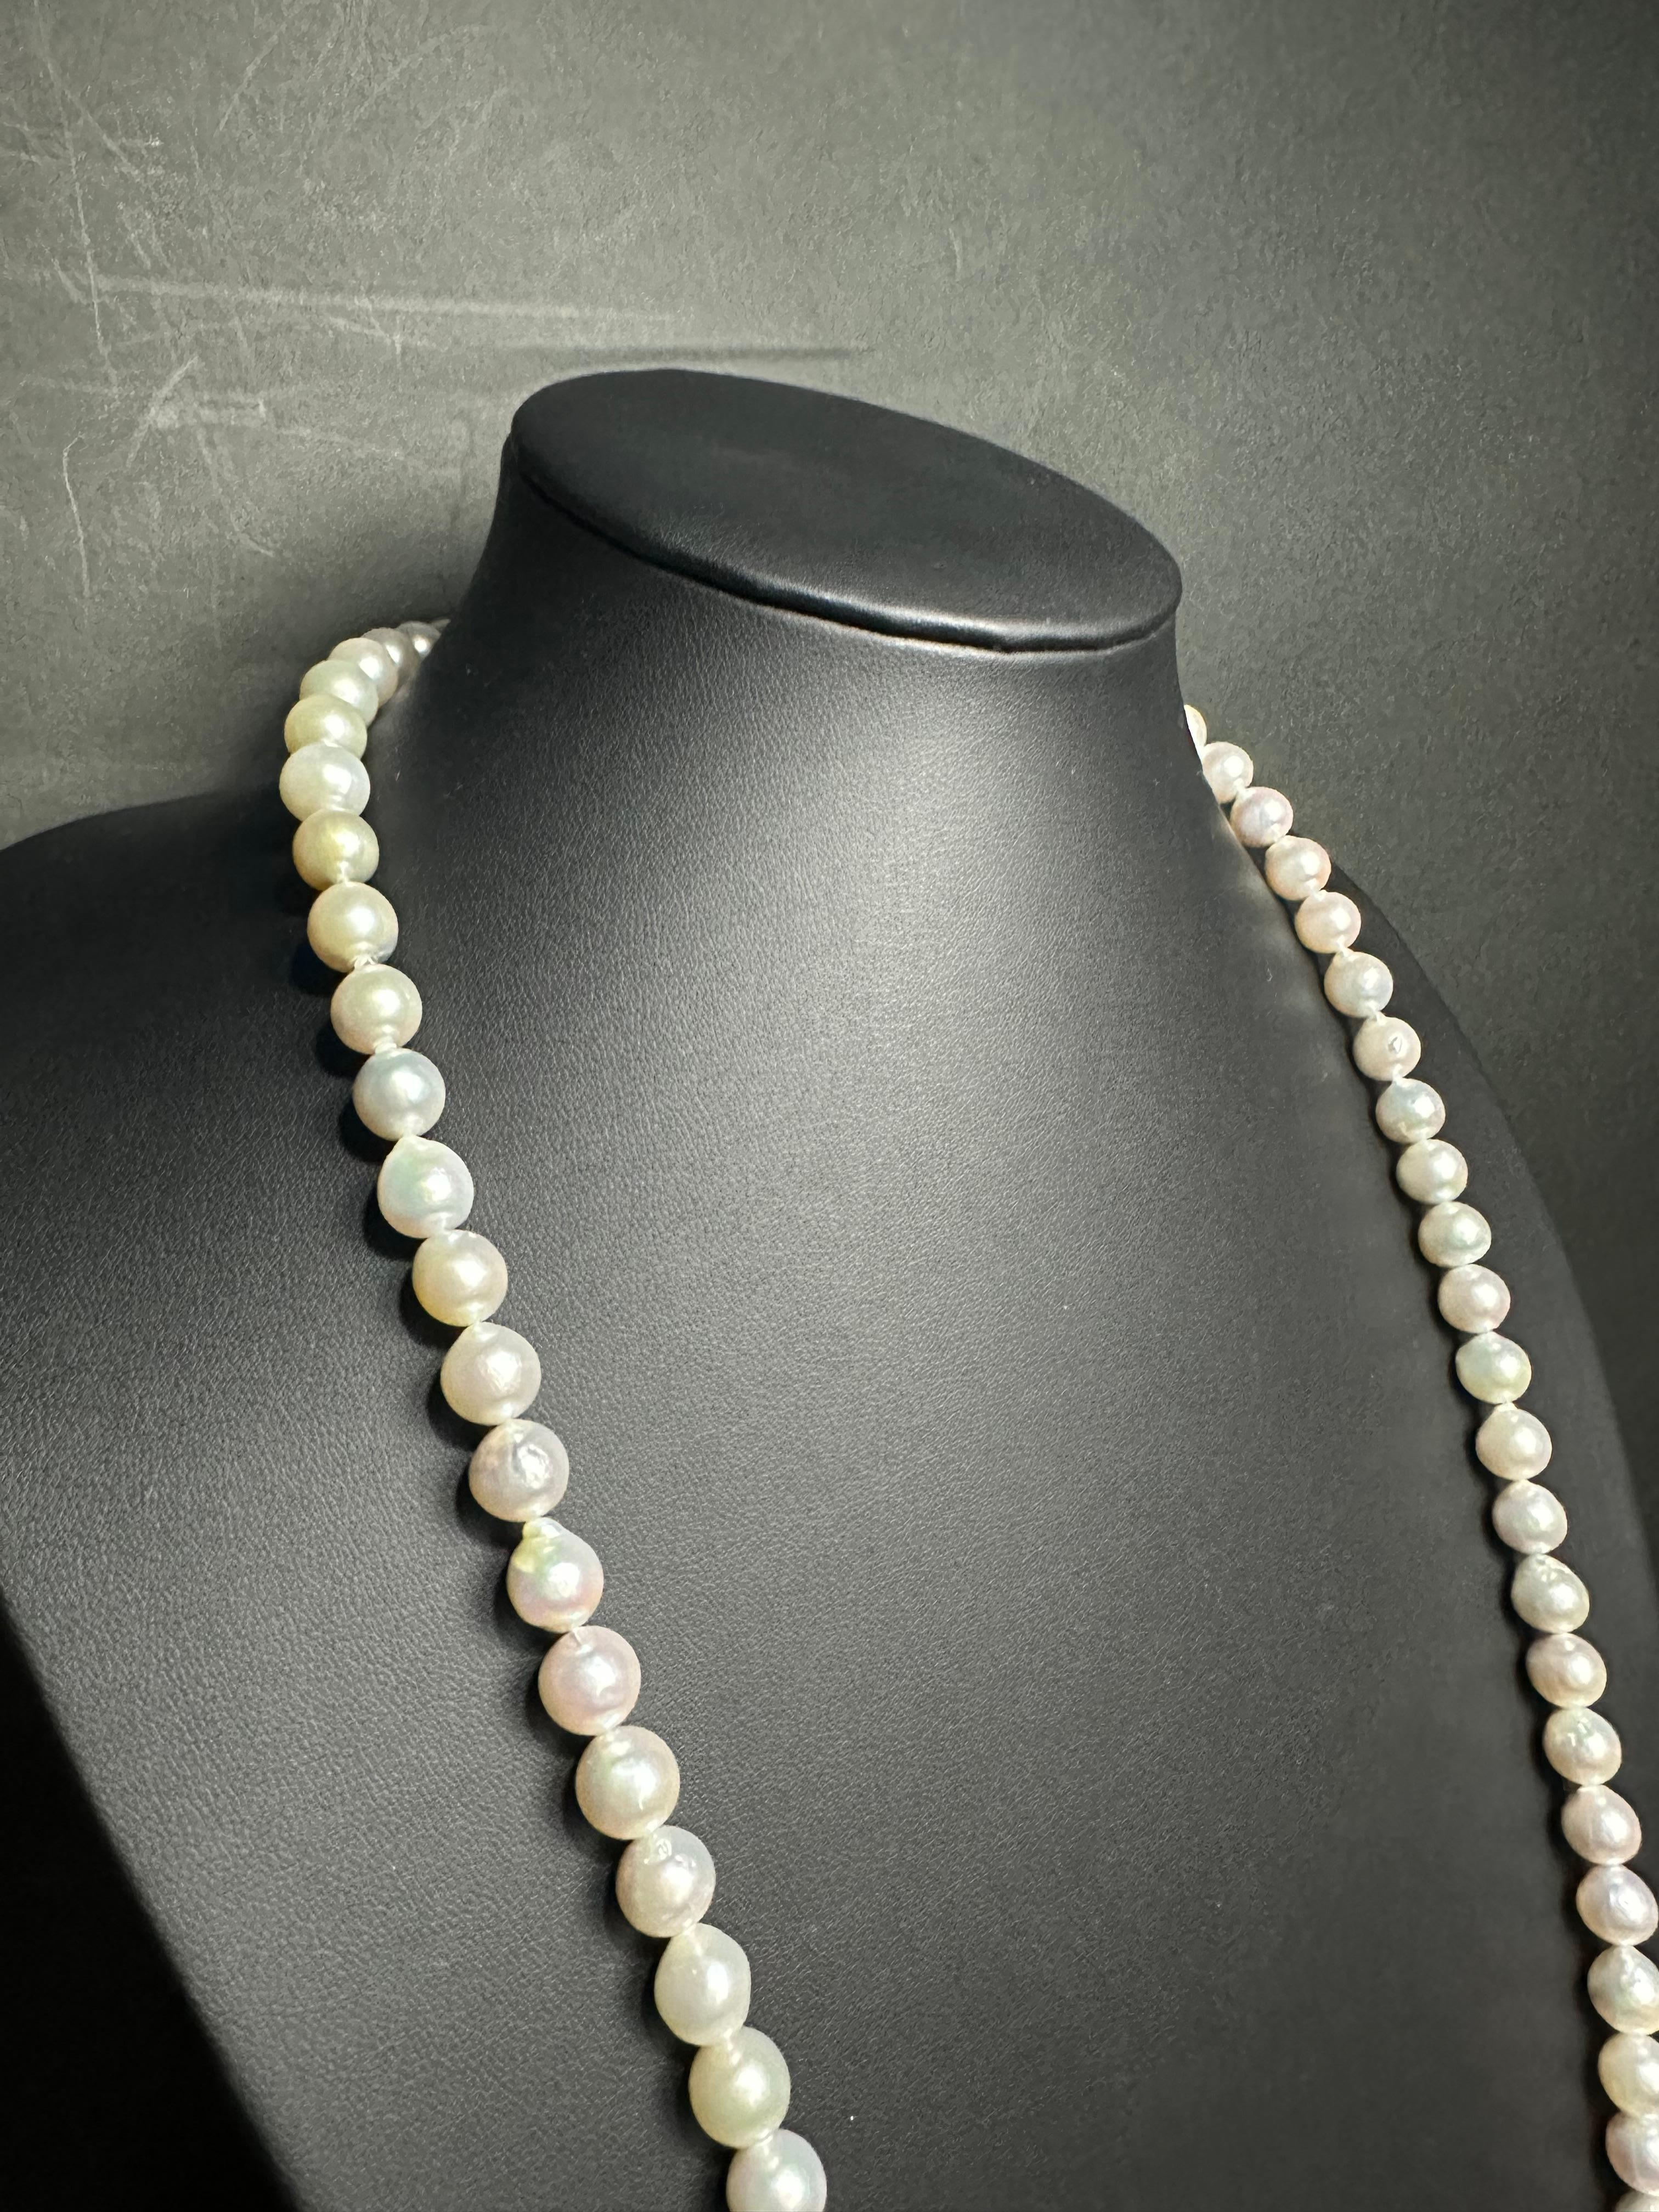 Schöpfer: IRIS PARURE
Perlenfarm: Ehime, Uwajima, JAPAN
Eigenschaften:Nicht gefärbt und nicht gebleicht, BENI AKOYA®
Größe der Perle: 9.00mm-9.50mm
Anzahl der Perlen: 82

 IRIS PARURE stellt seit ihrer Gründung im Jahr 1953 Perlenschmuck von